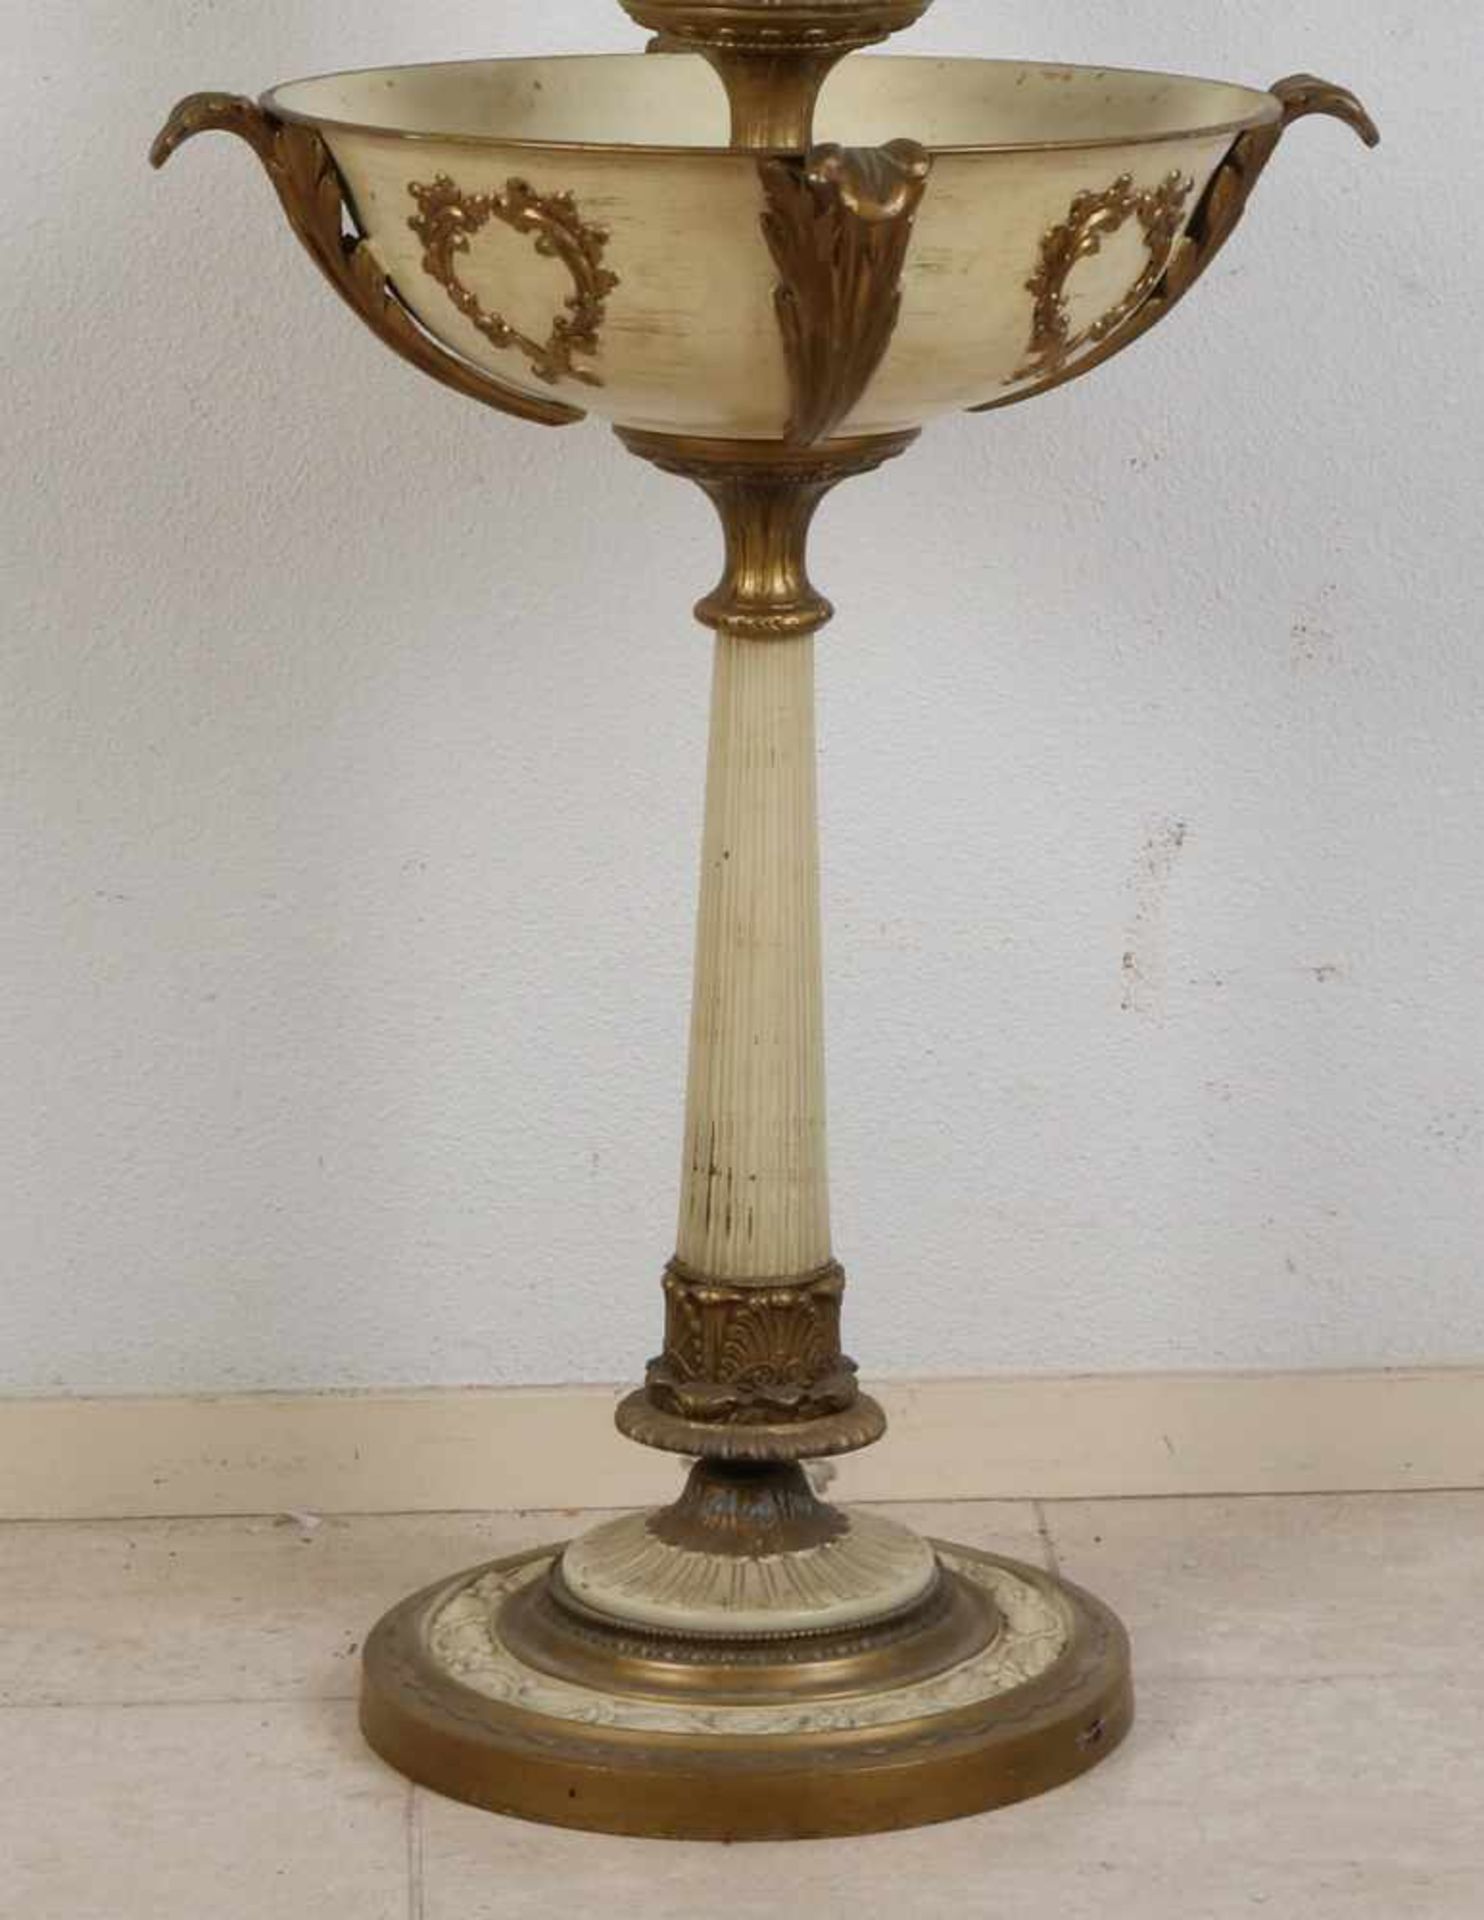 Große polychrome Metall-Stehlampe mit Jardiniere und Lady. Um 1900. Abmessungen: H 166 x Ø 43 cm. - Bild 3 aus 3